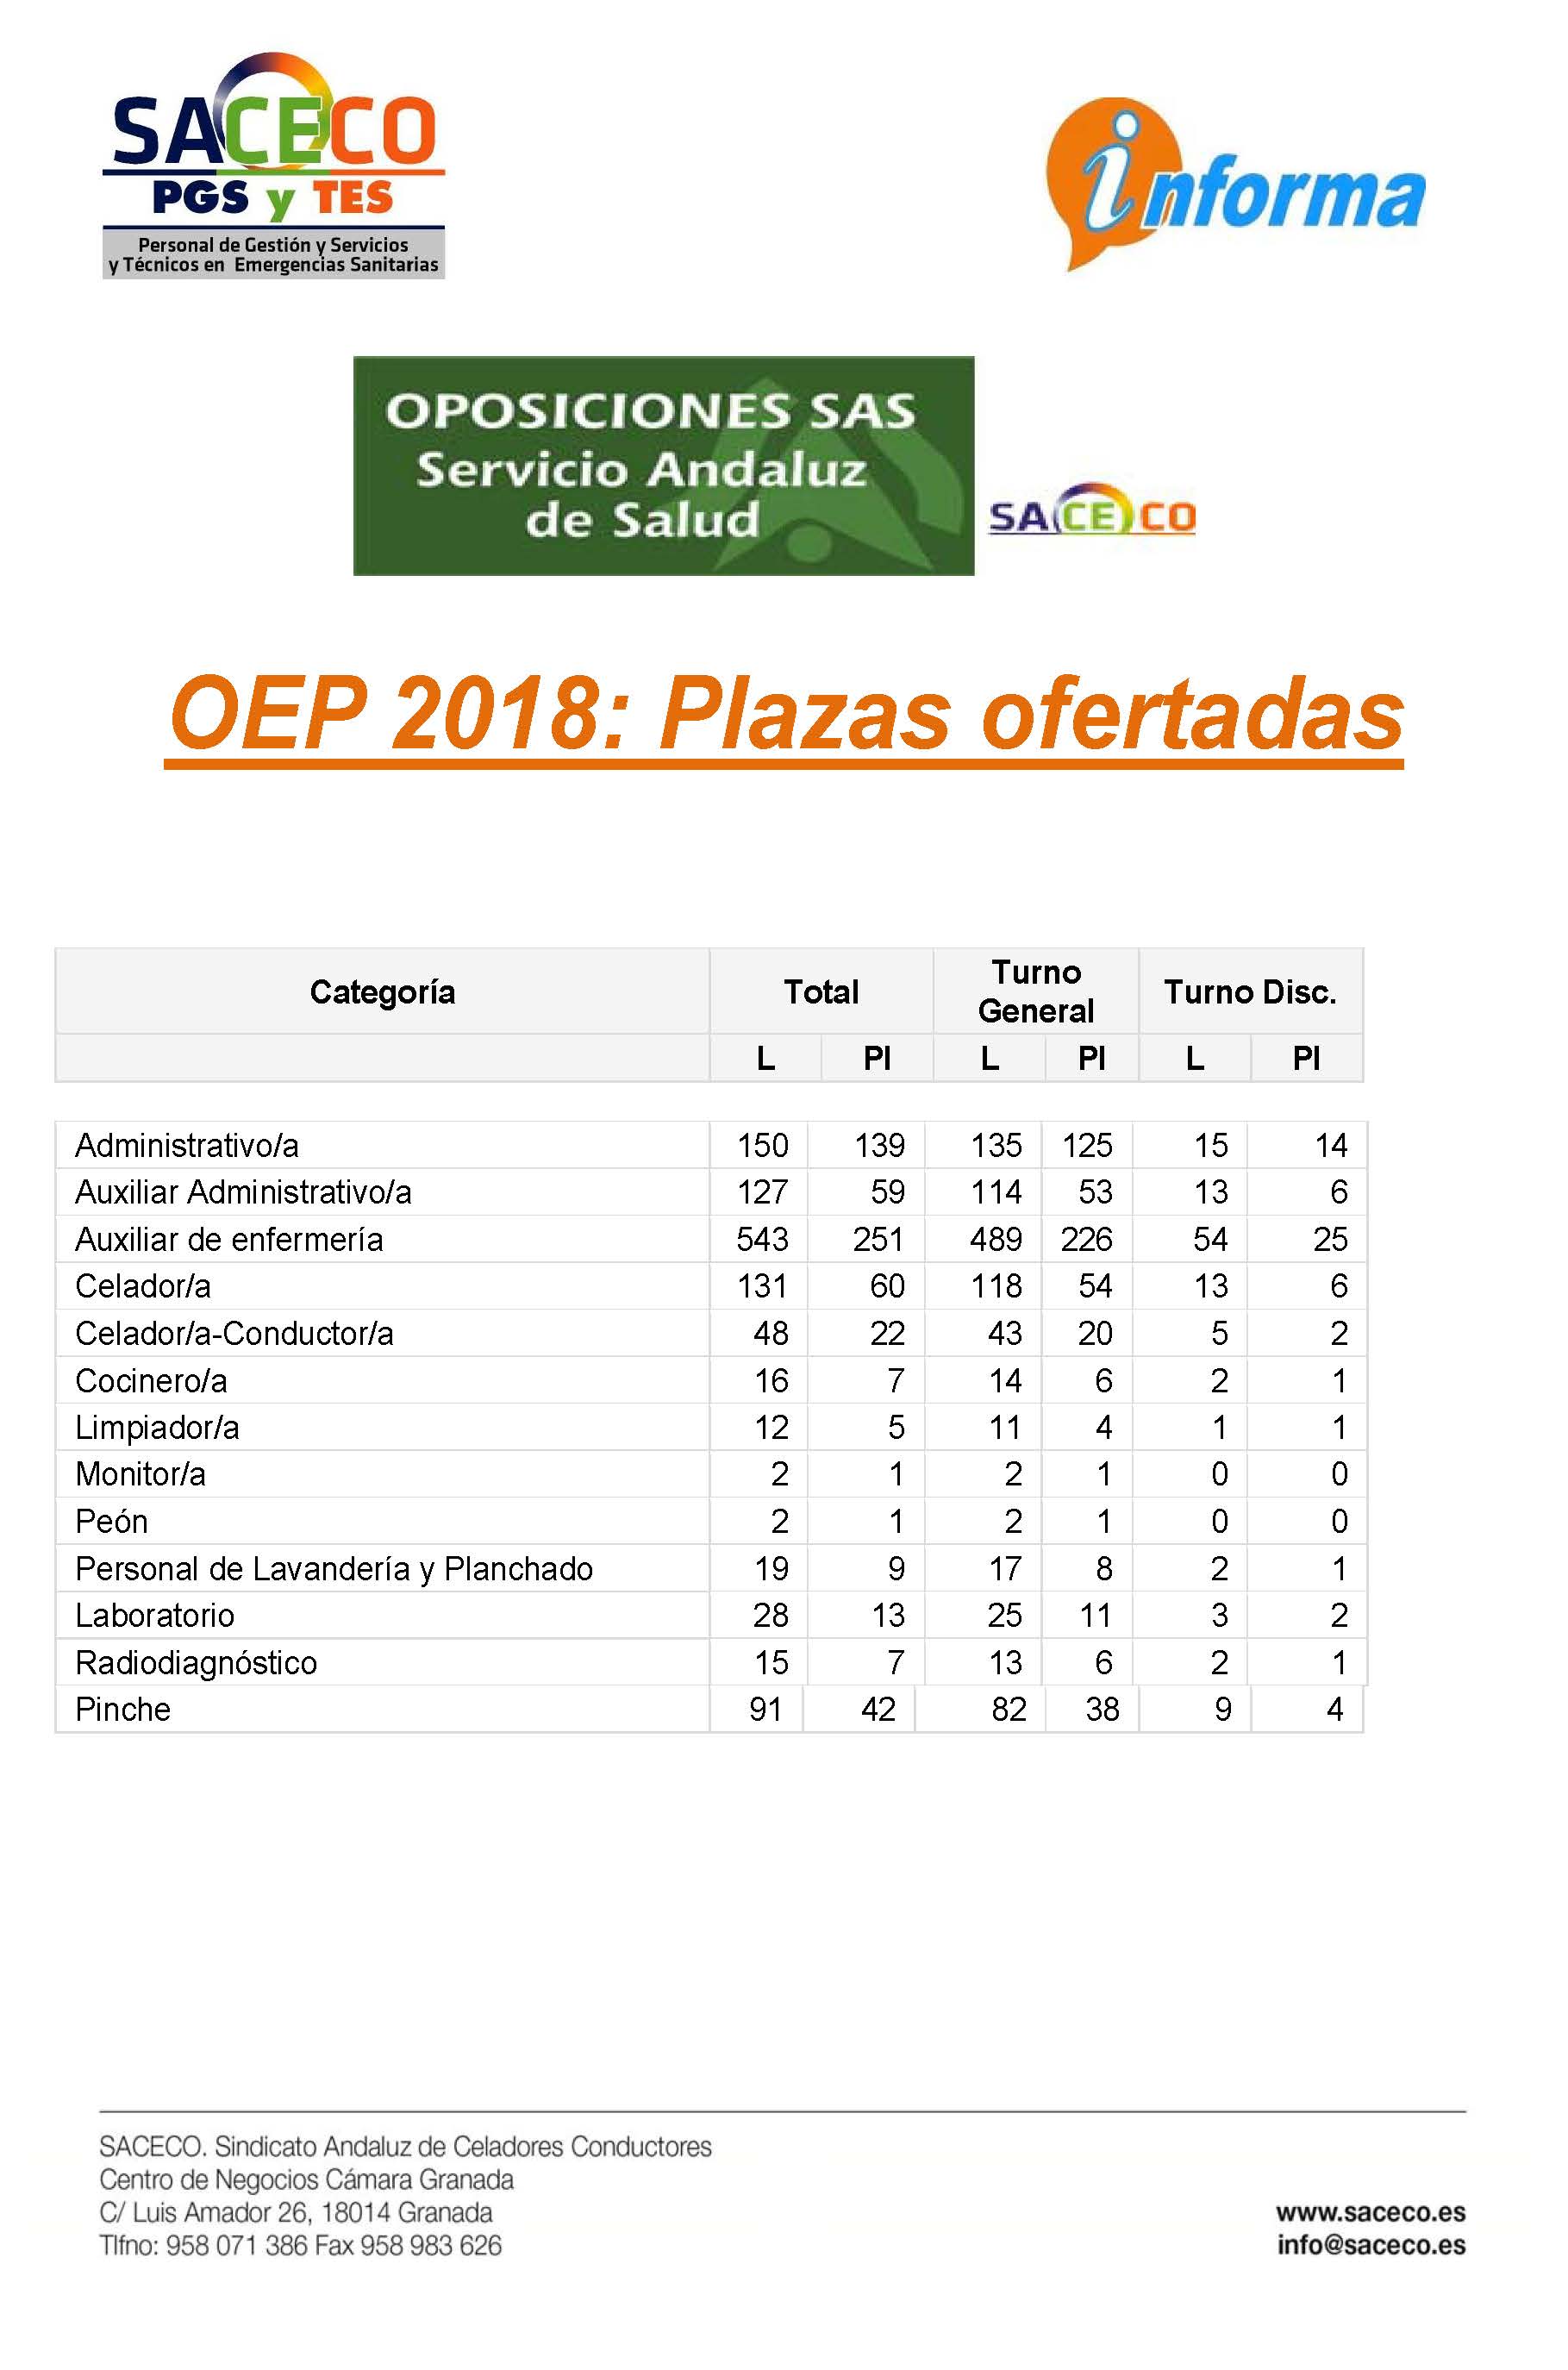 OPE 2018 PLAZAS OFERTADAS